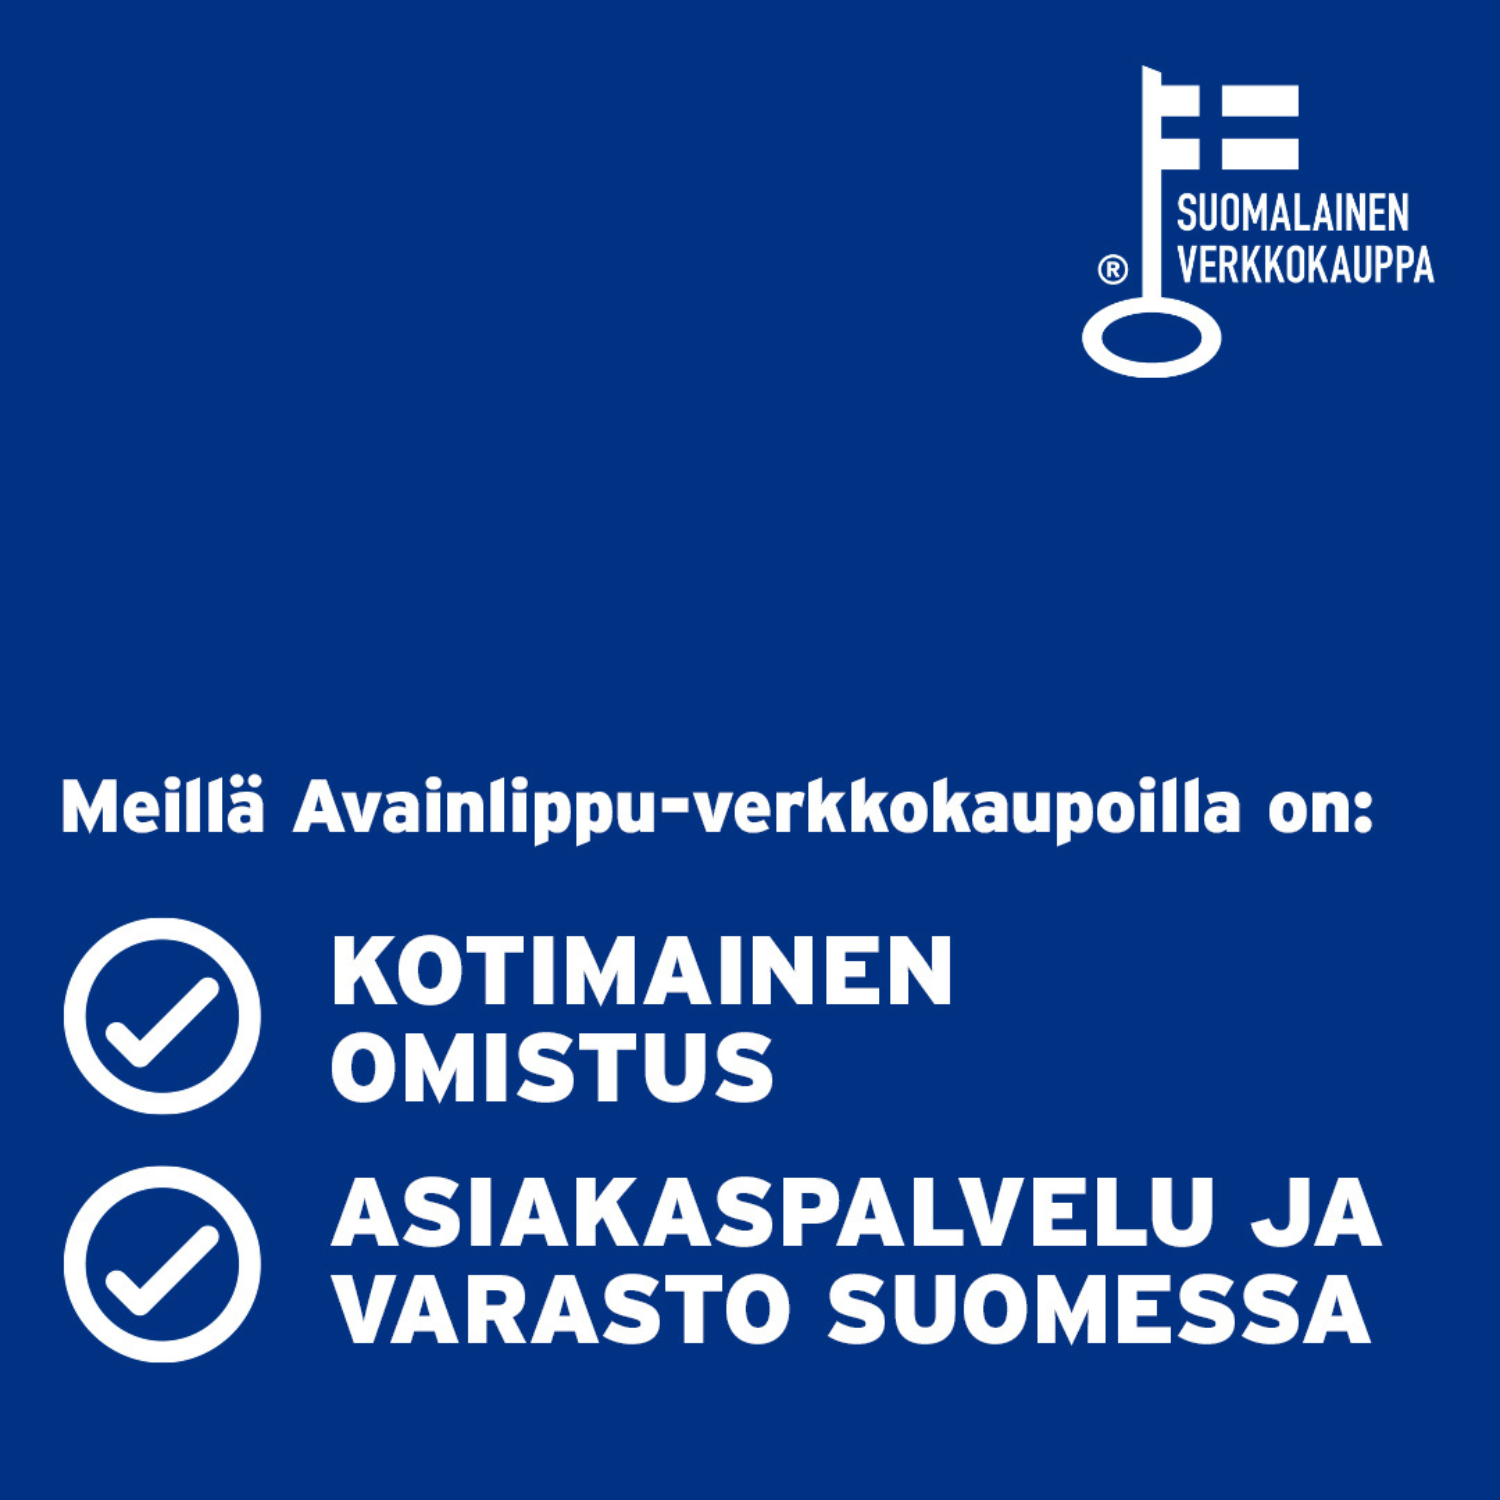 Asiantuntevaa palvelua suomeksi